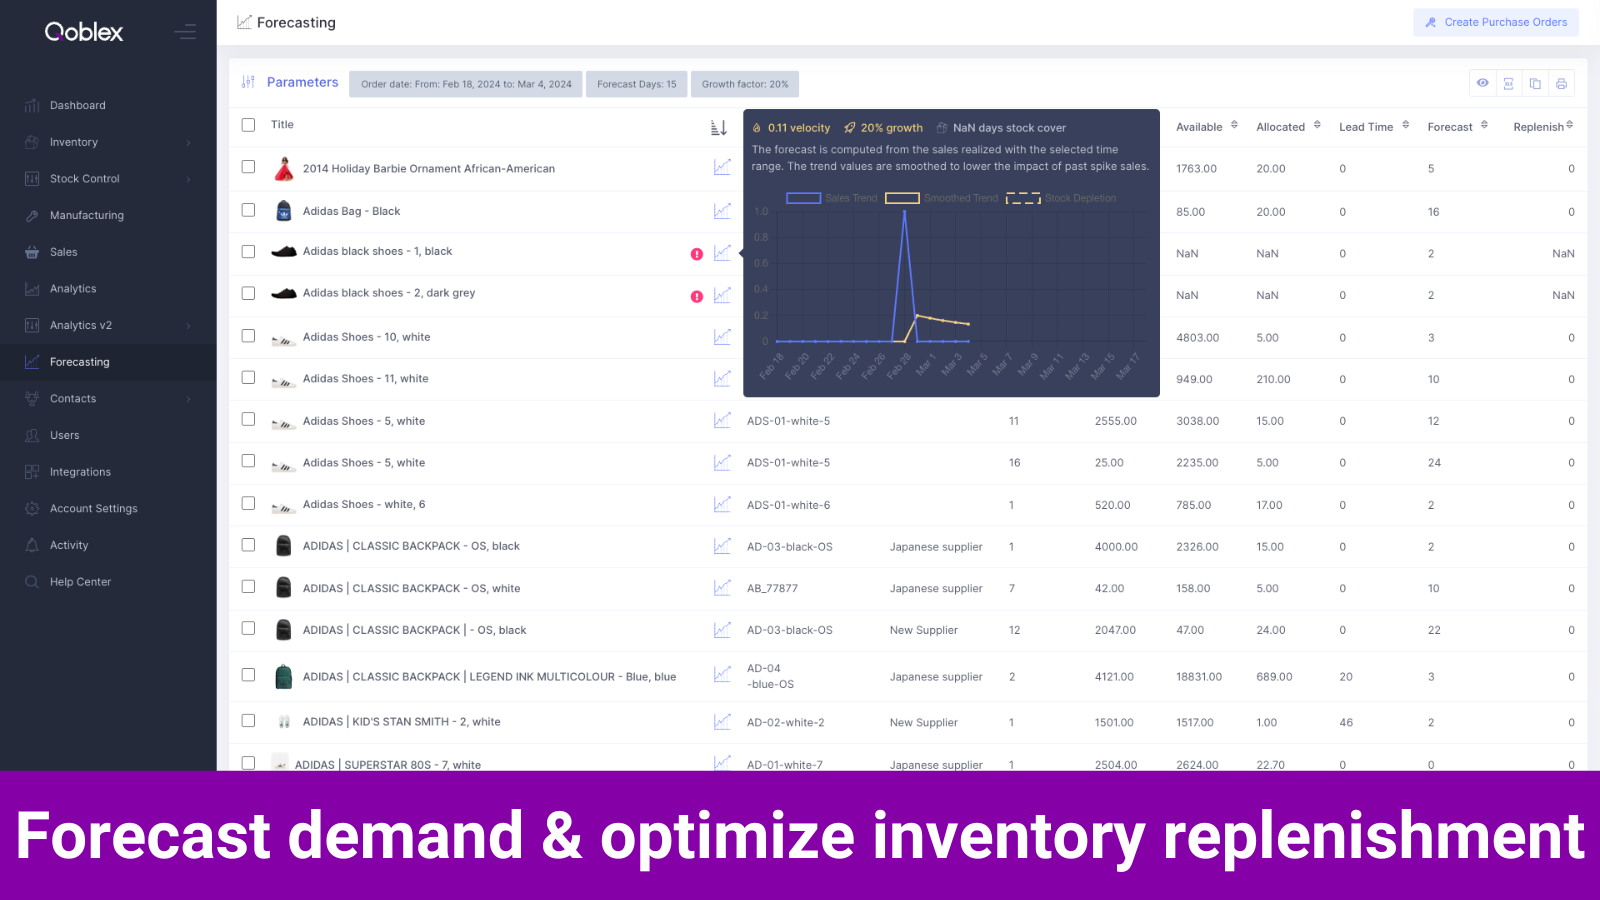 Qoblex - Forecast demand and optimize inventory replenishment